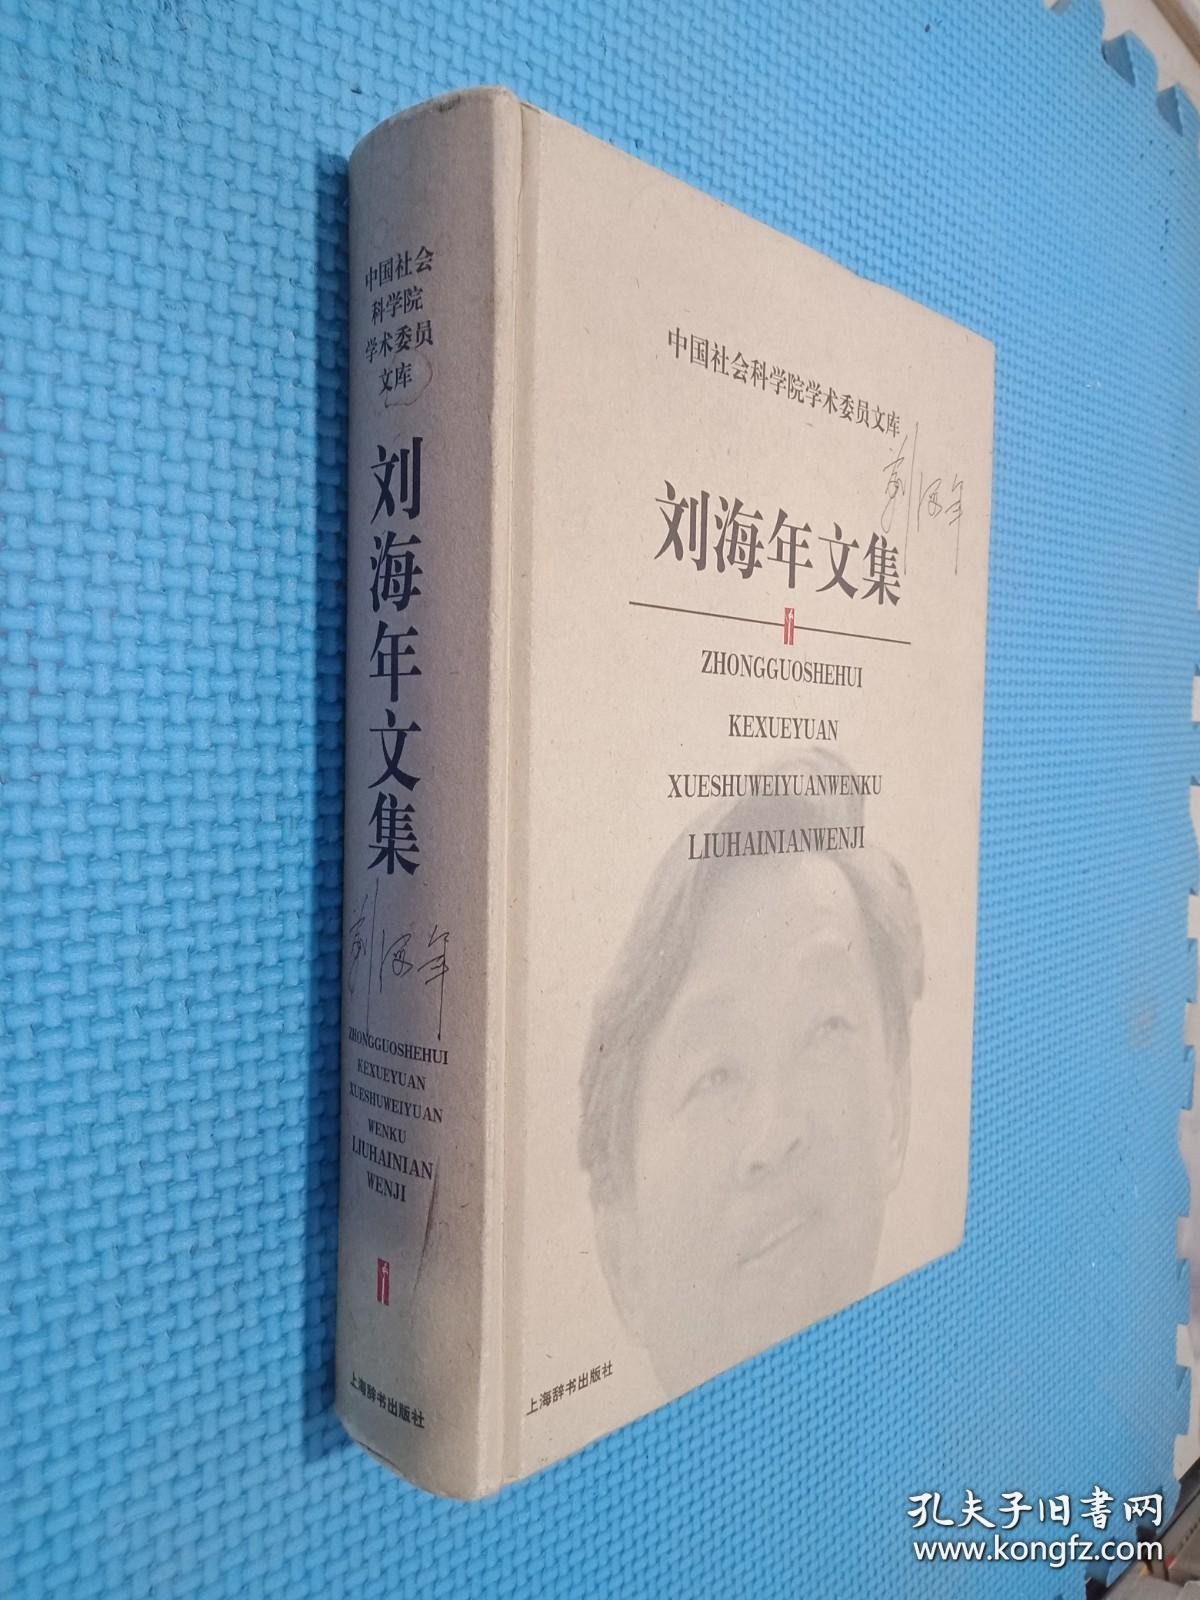 刘海年文集/中国社会科学院学术委员文库